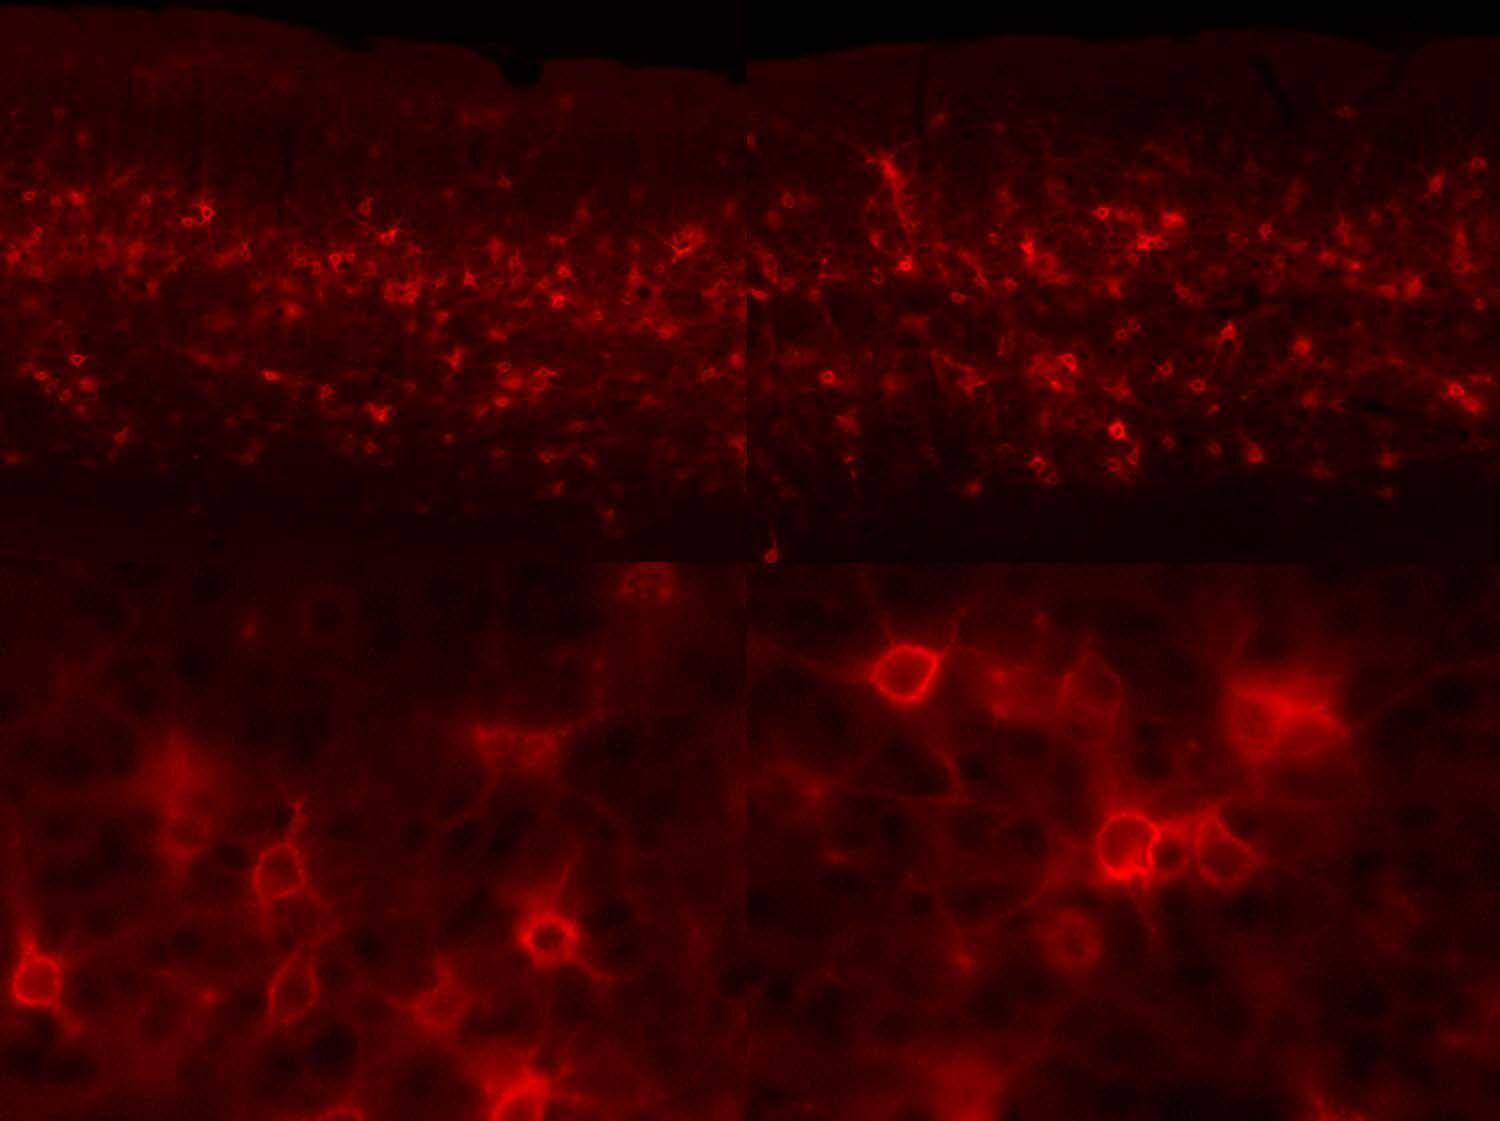 Neuronale Plastizität wird durch den enzymatischen Abbau der extrazellulären Matrix des Gehirns gefördert. Diese fluoreszenzmikroskopische Aufnahme zeigt Nervenzellen aus der Sehrinde einer Maus, die von rot markierten ECM Molekülen umhüllt sind.  Obere Reihe: niedrige Vergrößerung, untere Reihe: höhere Vergrößerung.